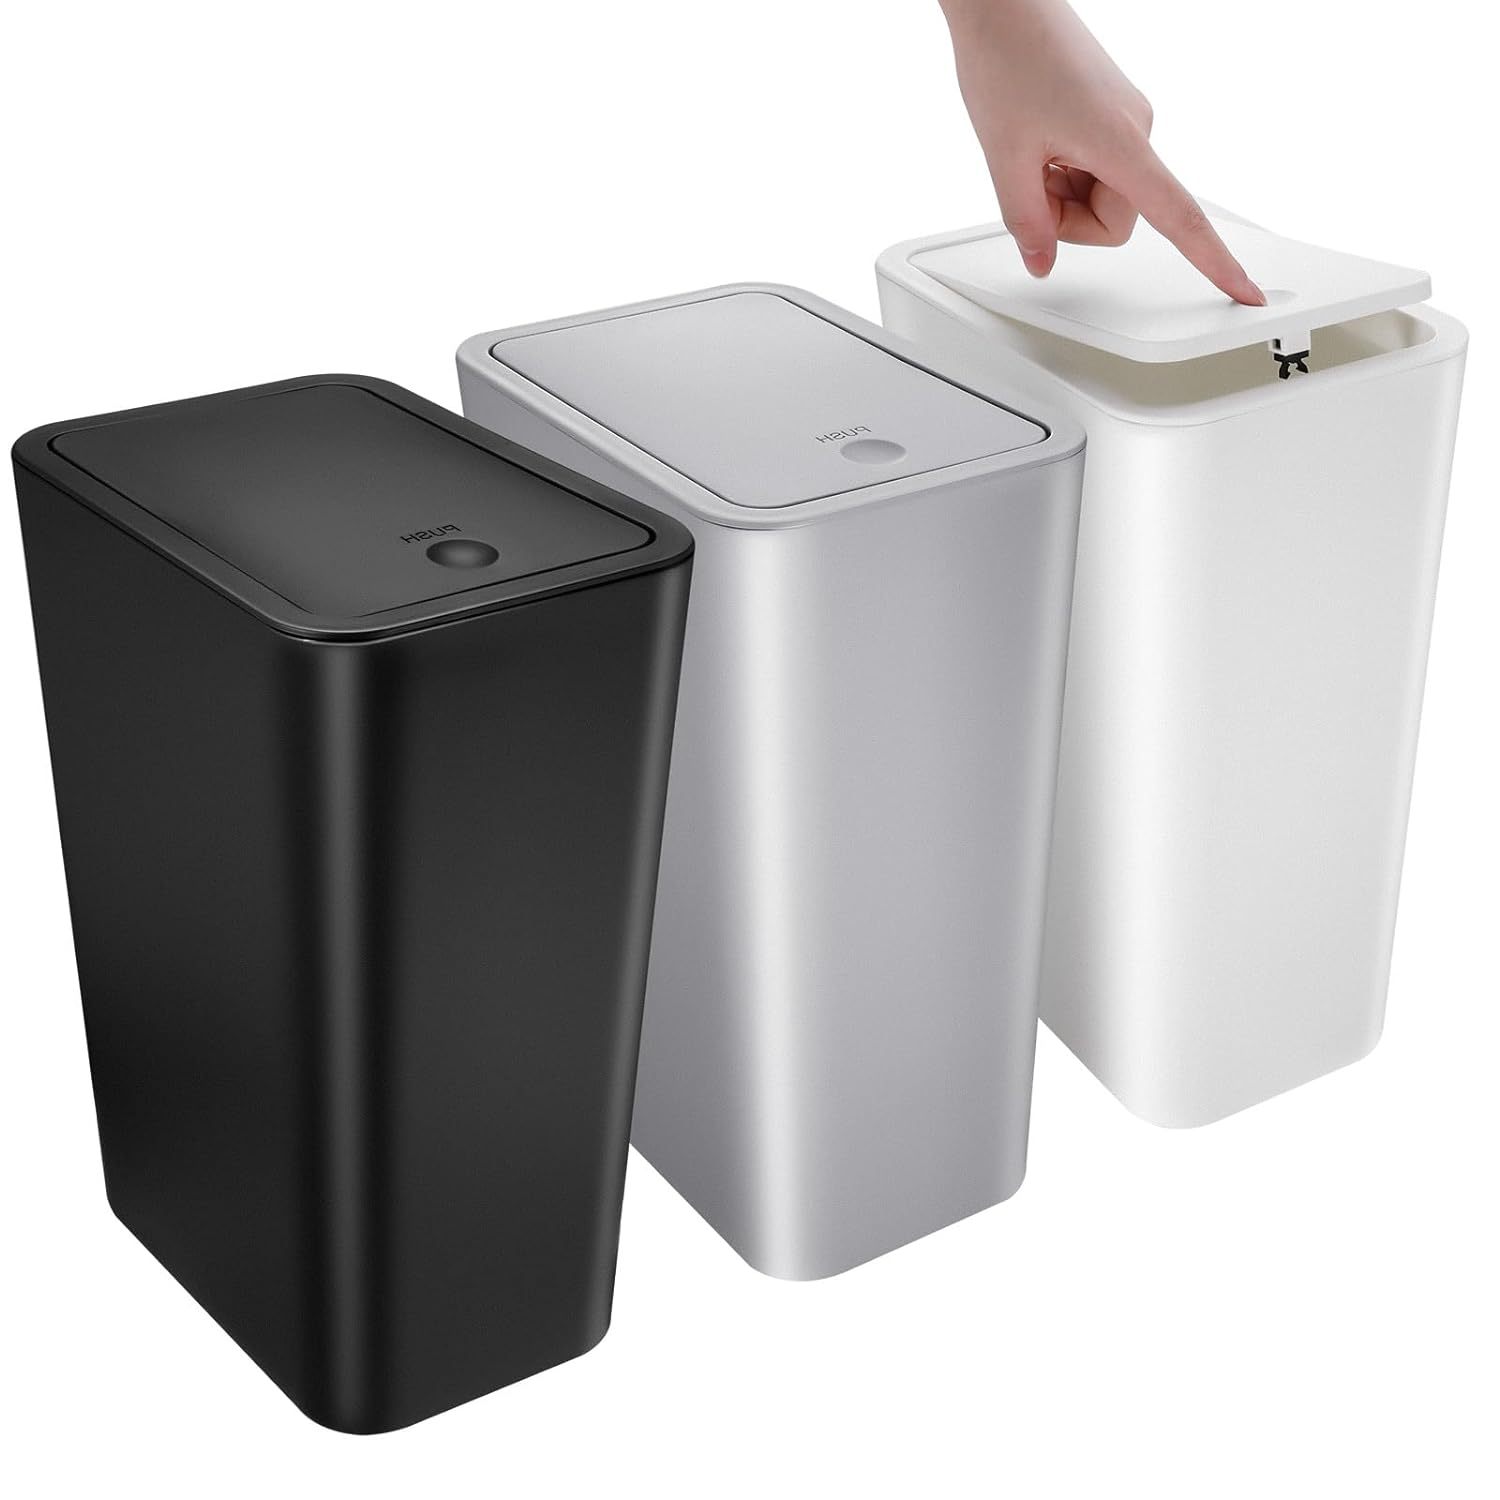 Cubo de basura pequeño de 1.8 galones para reciclaje de baño, dormitorio,  oficin 